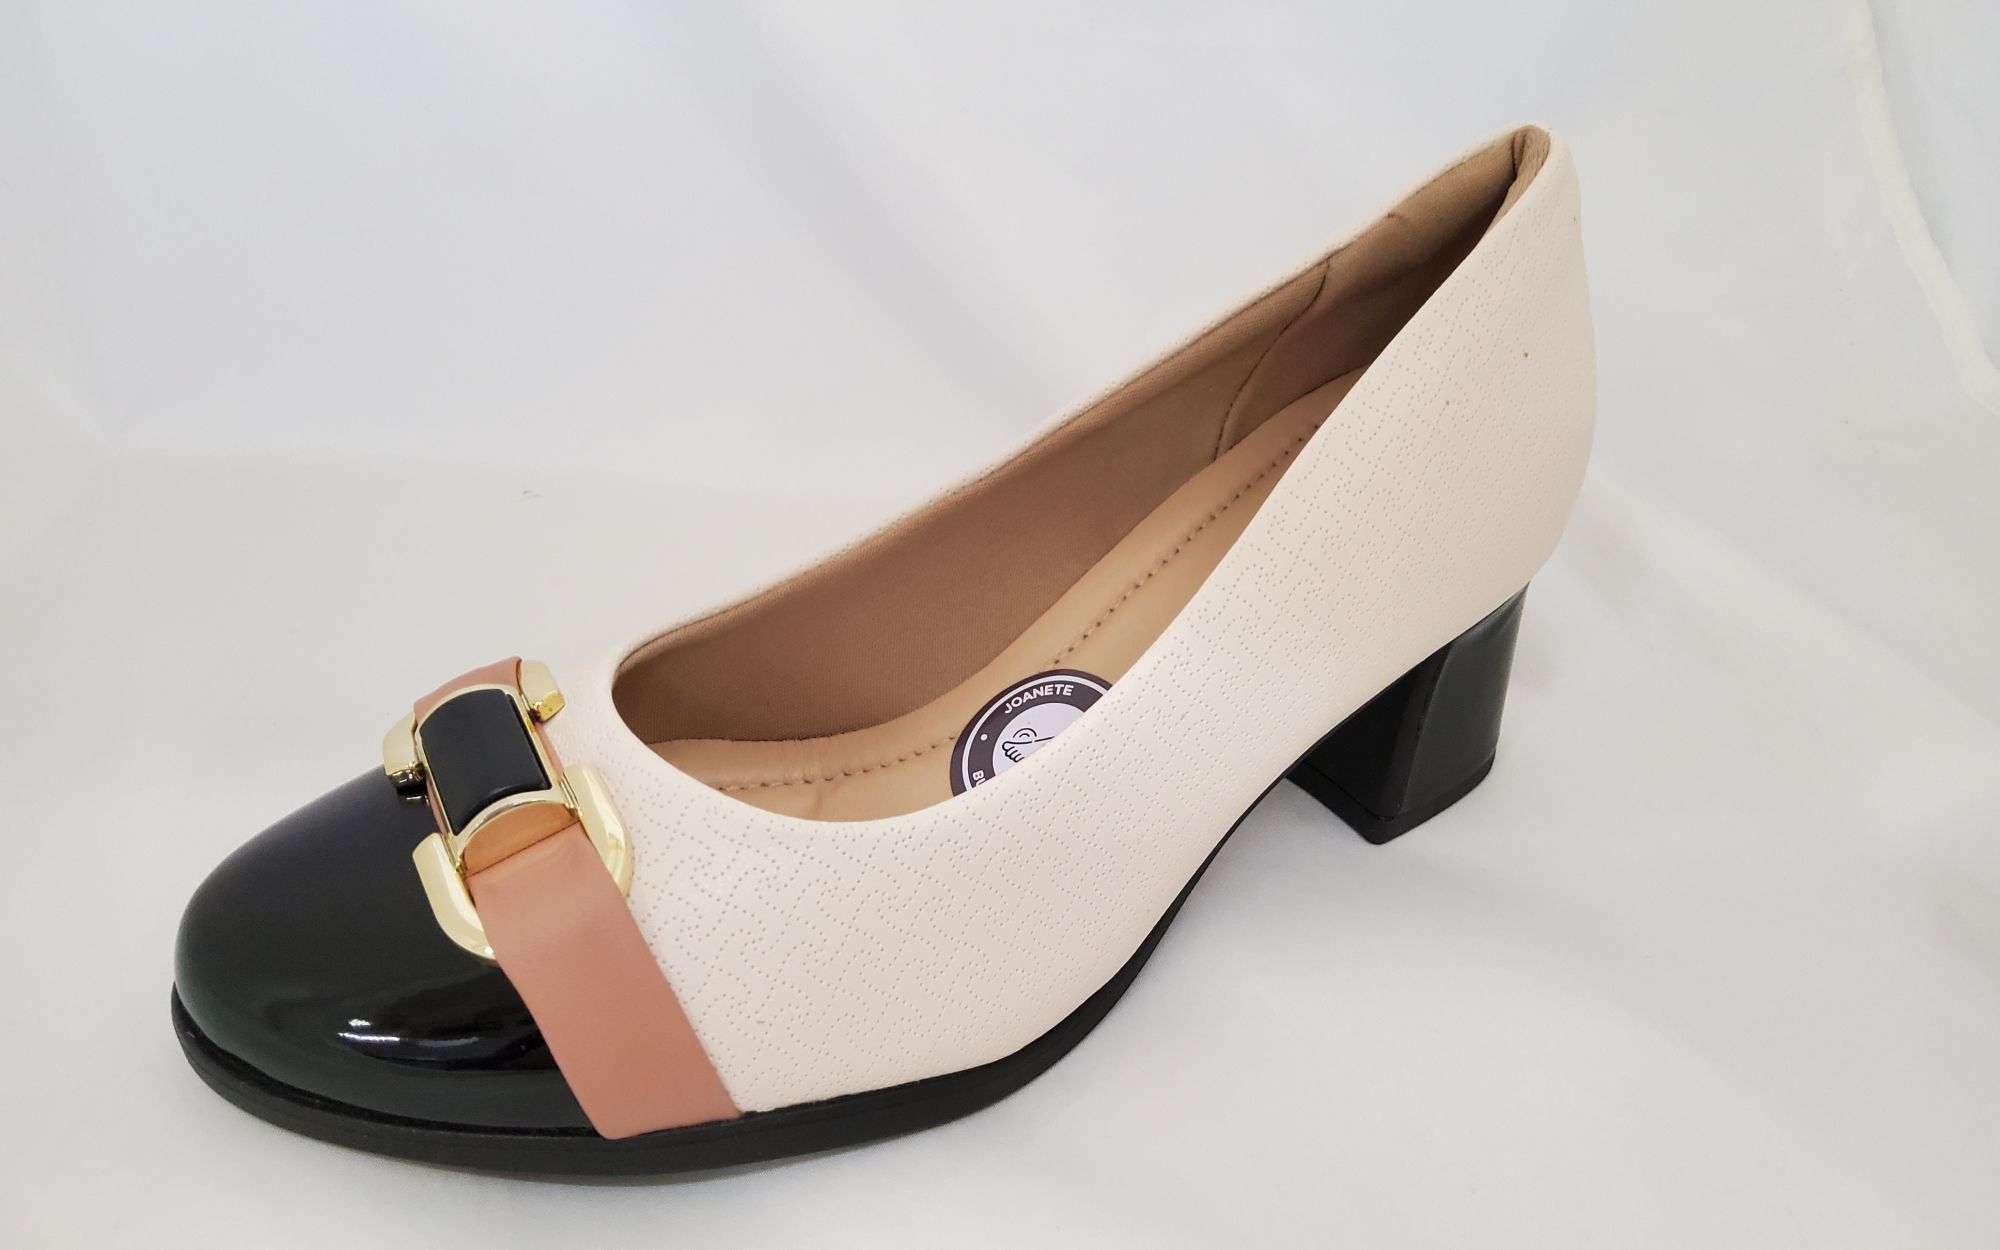 PICCADILLY Női elegáns cipő 654044-1 napastr.off white-preto)   piszkos fehér-fekete